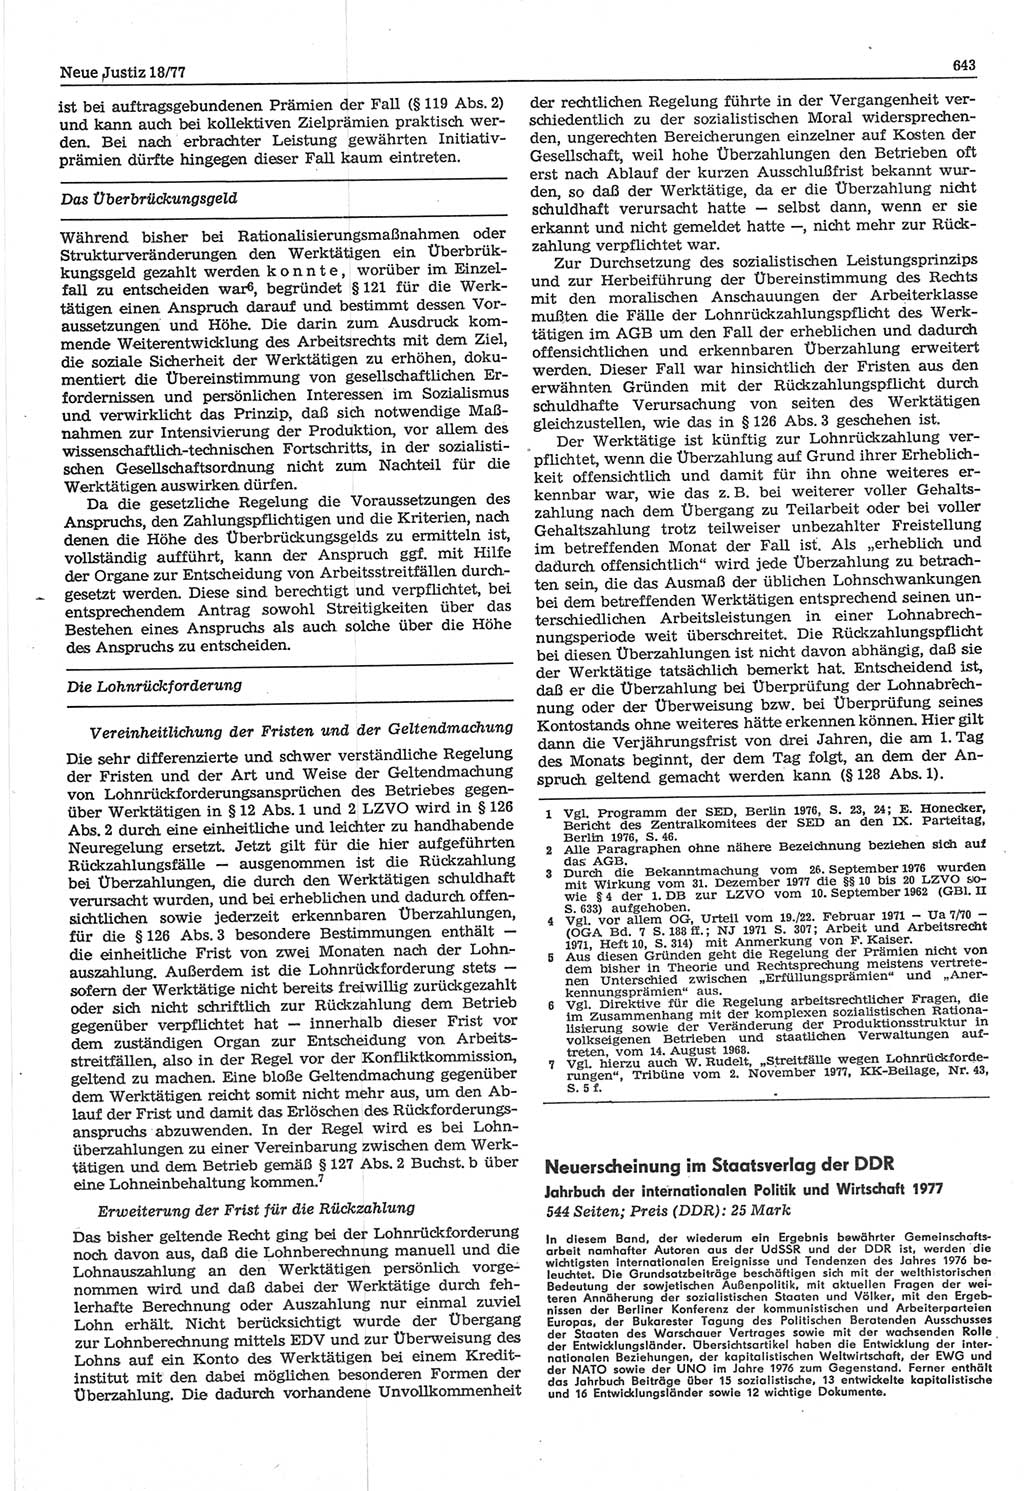 Neue Justiz (NJ), Zeitschrift für Recht und Rechtswissenschaft-Zeitschrift, sozialistisches Recht und Gesetzlichkeit, 31. Jahrgang 1977, Seite 643 (NJ DDR 1977, S. 643)